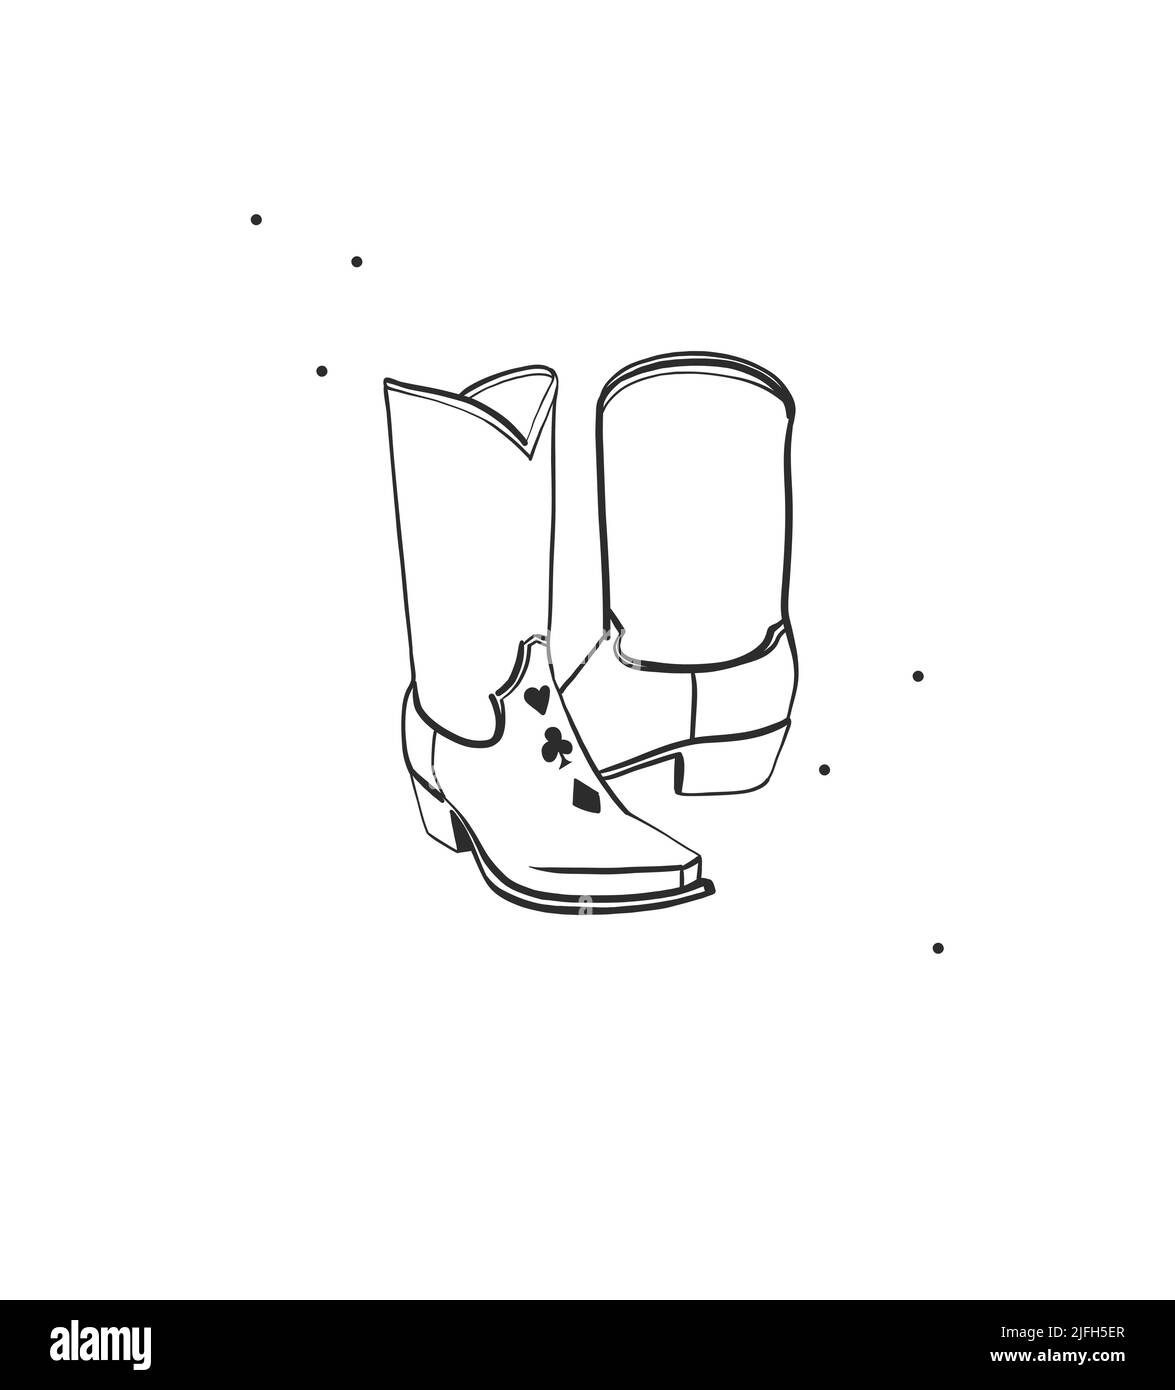 Handgezeichnete abstrakte Vektor Grafik Cliparts Illustration boho Cowgirl Rodeo Boots.Western weiblich Design concept.Bohemian wilden Westen zeitgenössische Kunst Stock Vektor